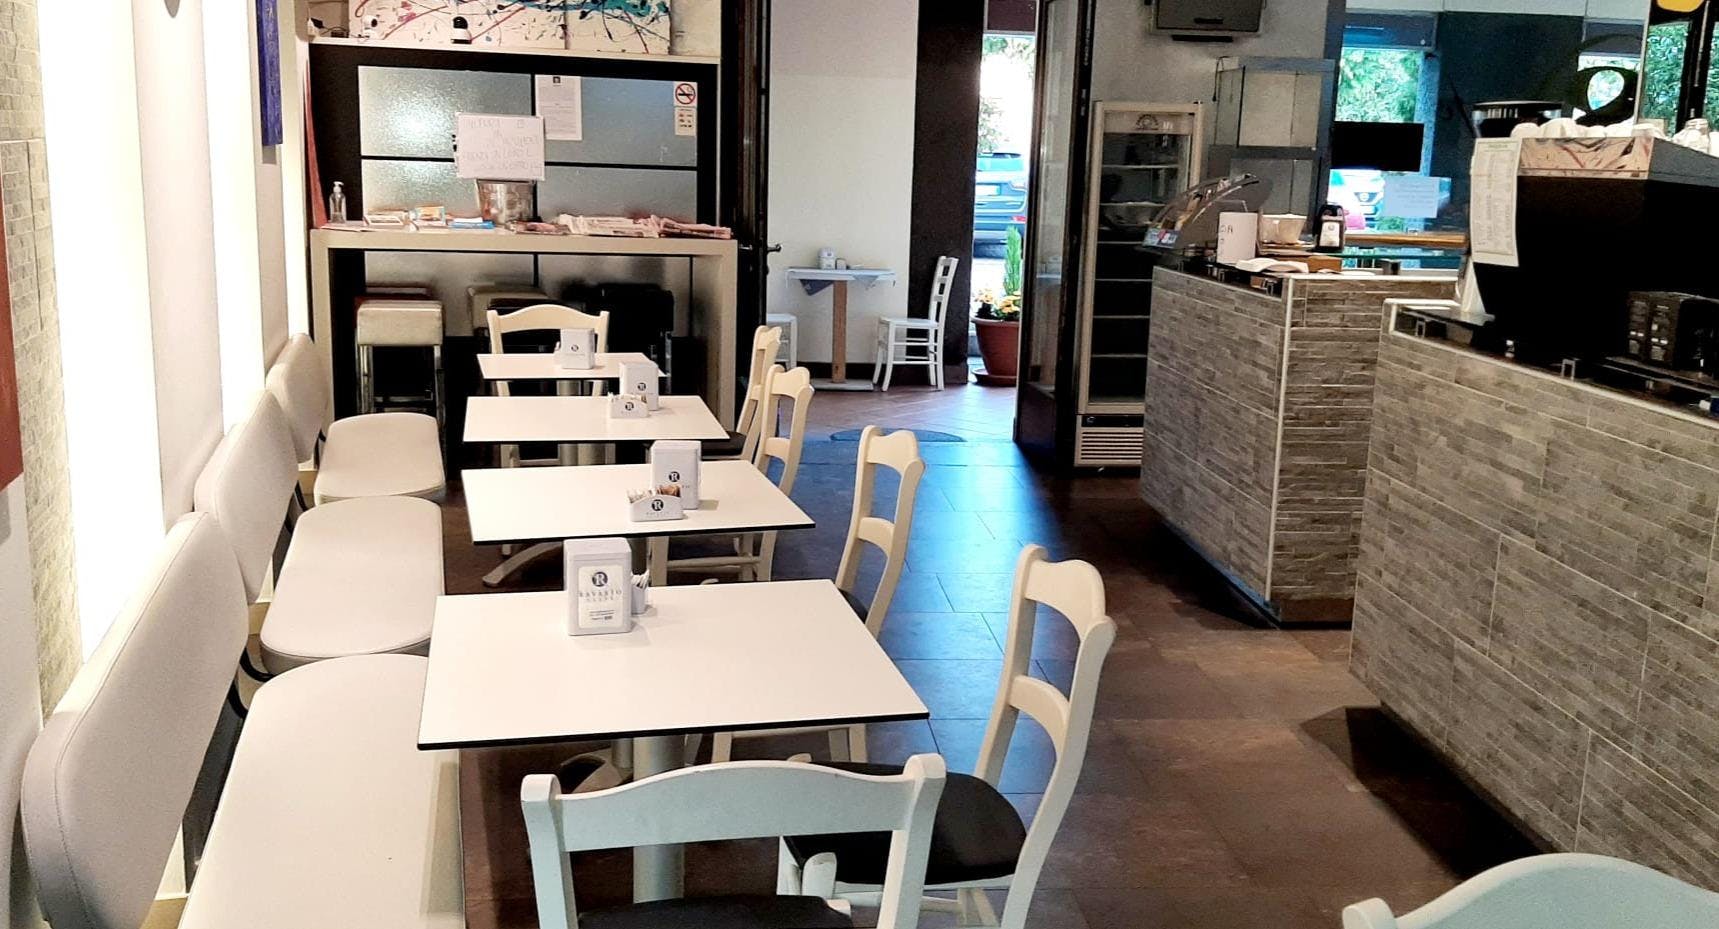 Photo of restaurant Eno8cafè in Albino, Bergamo